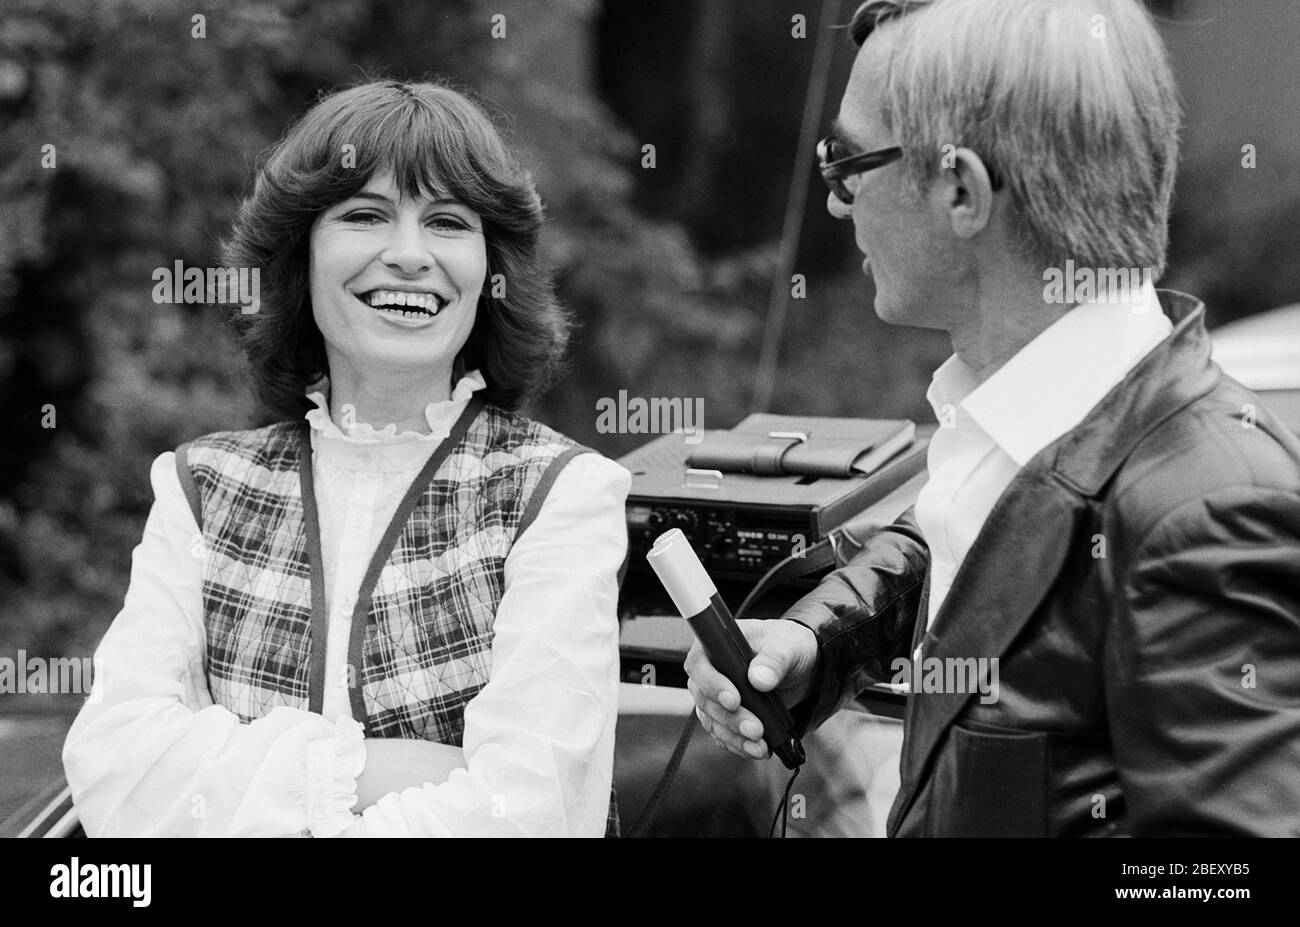 Mary Roos, deutsche Schlagersängerin, bei einem Interview, Deutschland um 1976. Schlagersängerin Mary Roos im Interview, Deutschland um 1976. Stockfoto